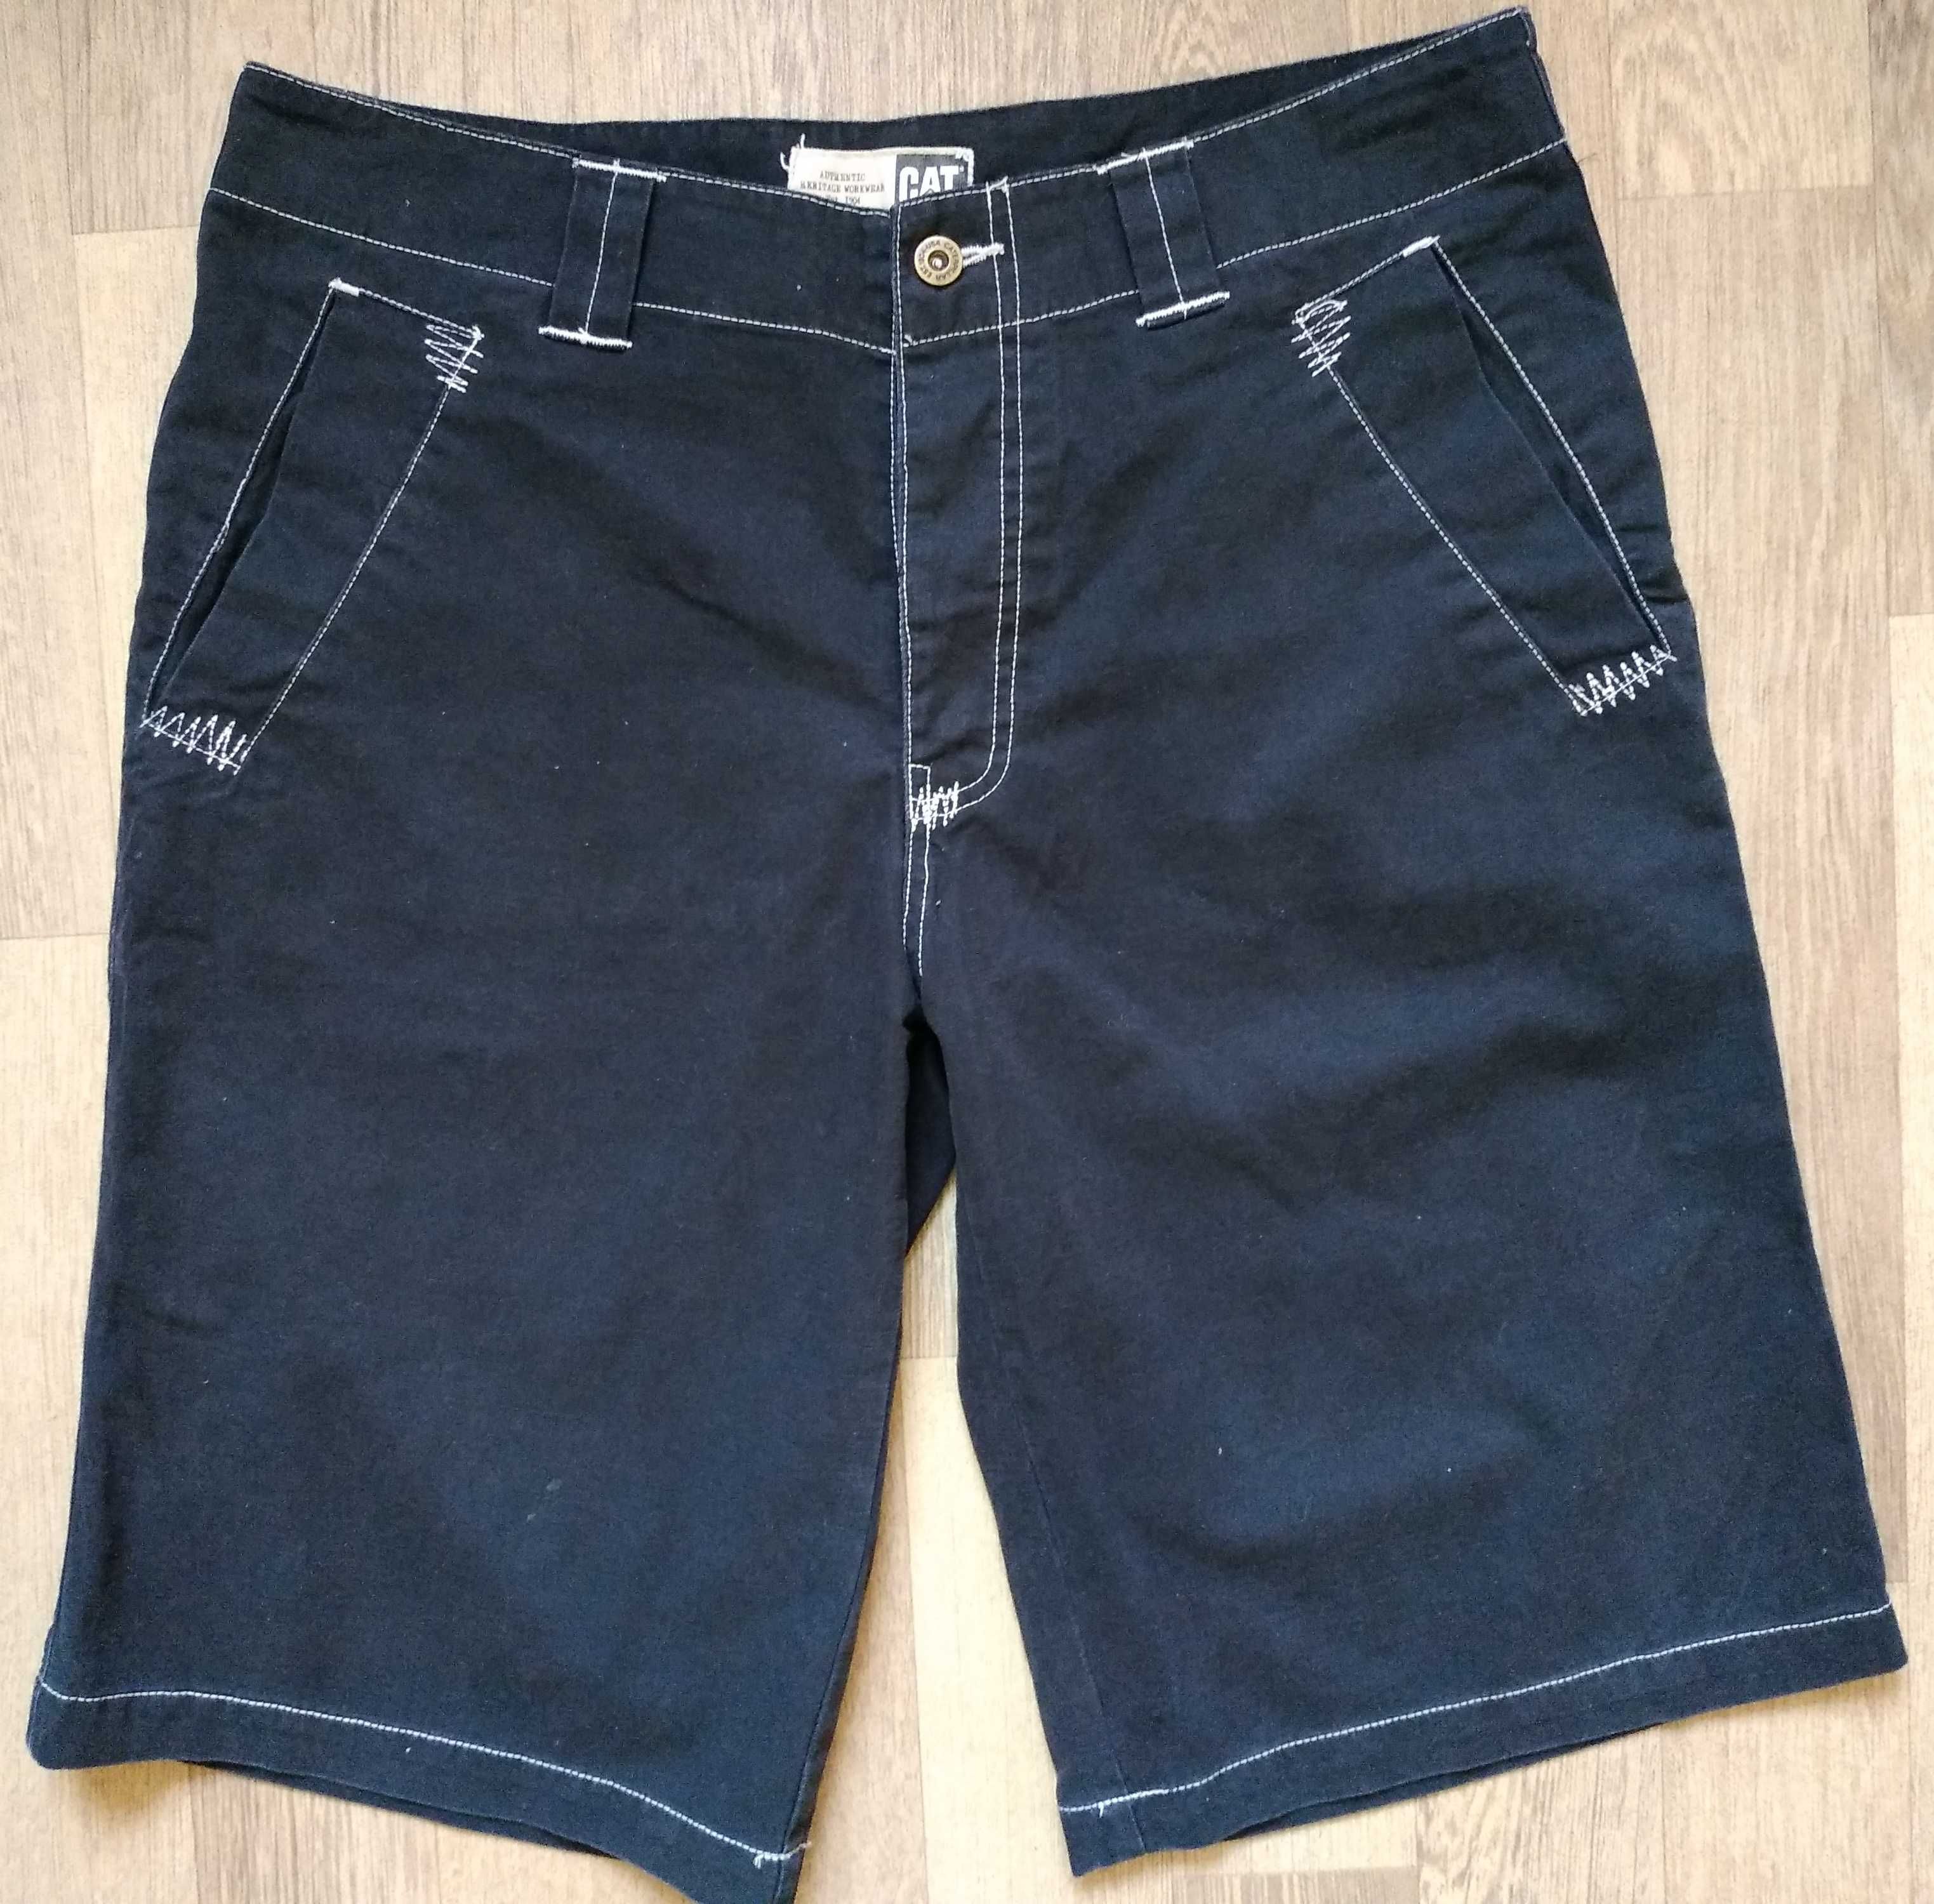 Мужские шорты Caterpillar XL/W36 джинсовые